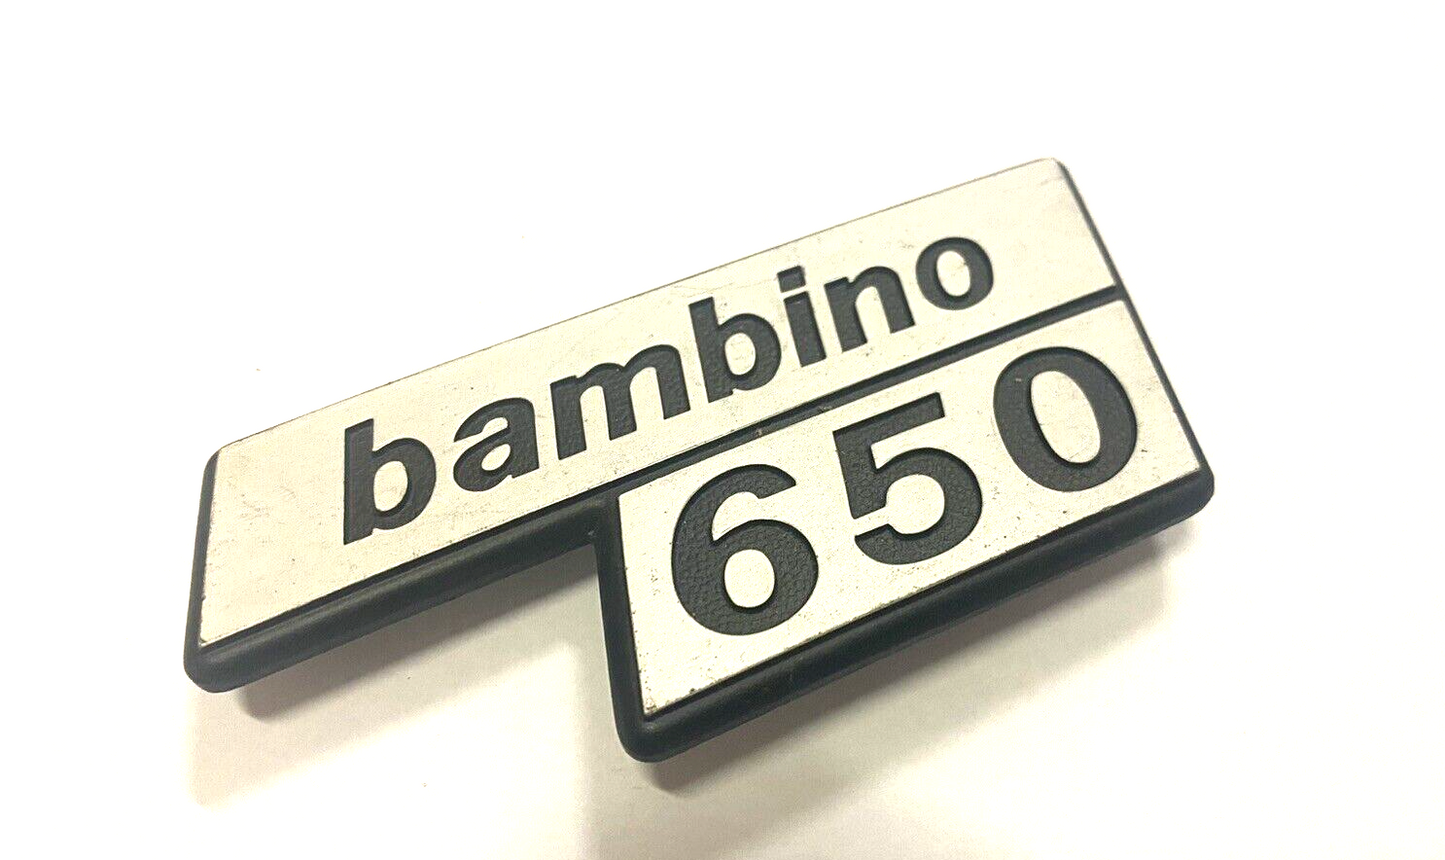 Scritta logo badge cofano posteriore Fiat 126 Bambino 650 originale auto d'epoca